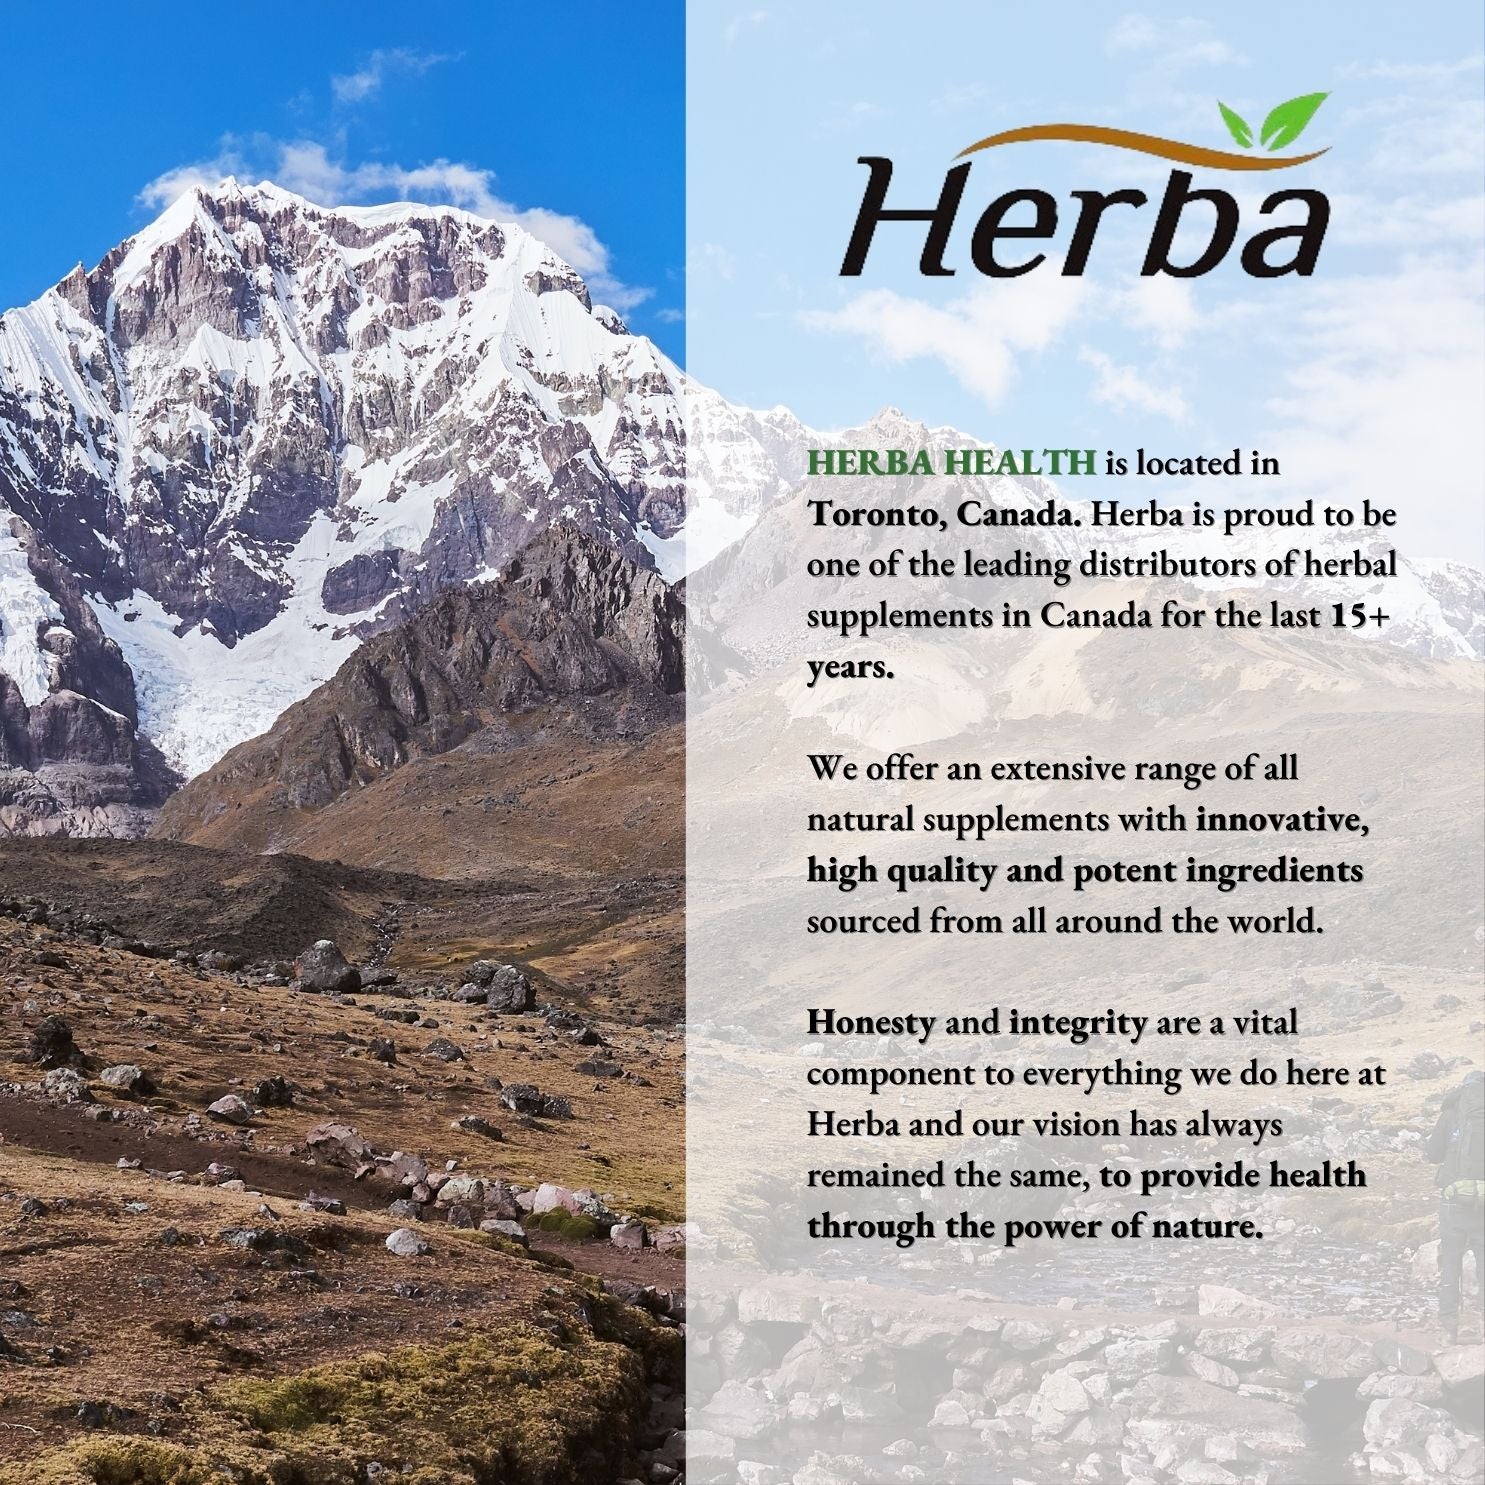 Herba Tart Cherry Extract Capsules – 120 Capsules | 10,000mg Per Day